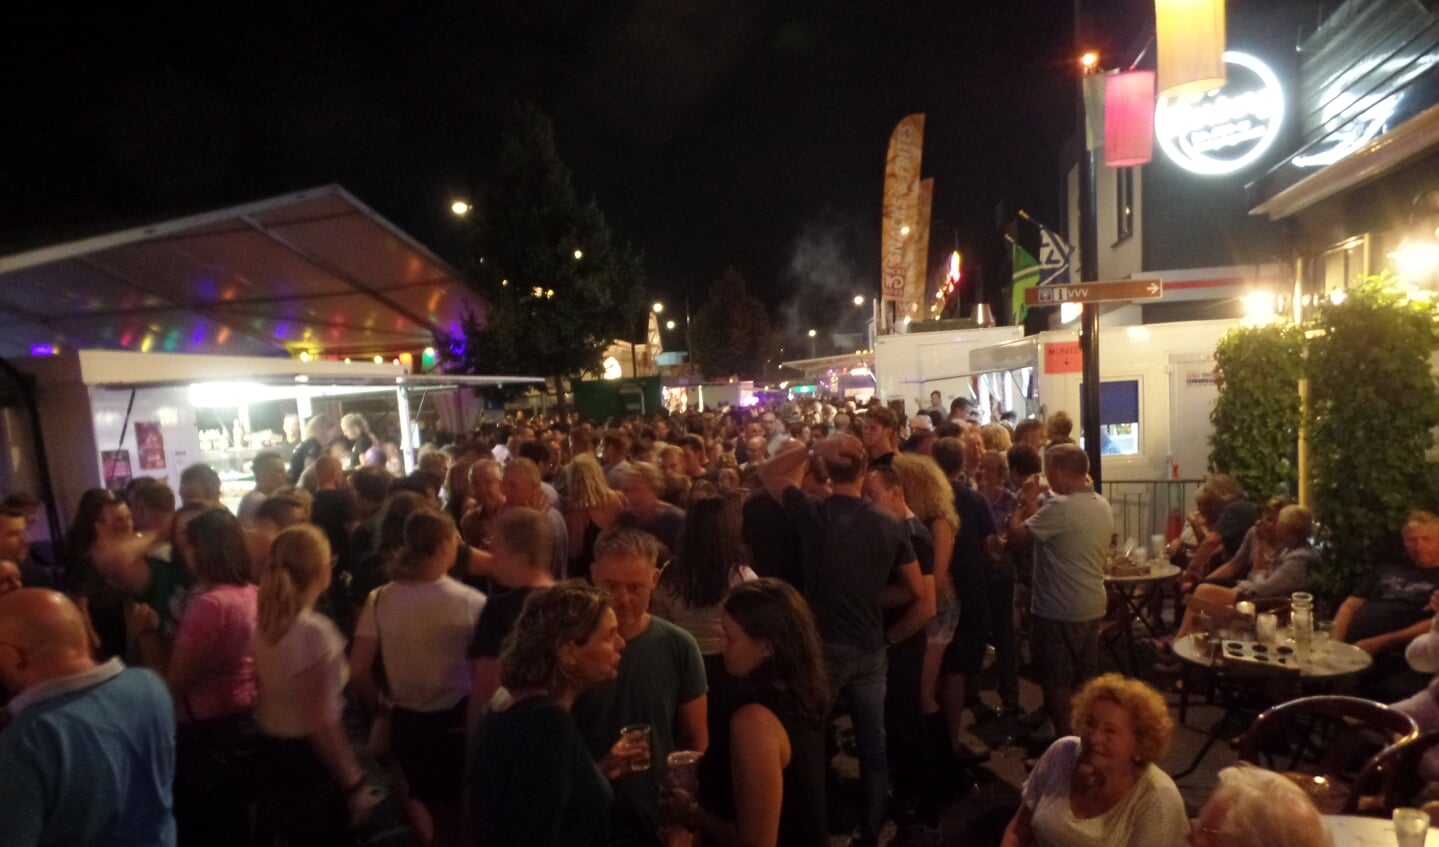 De doorstroming van het publiek verliep rond de feesttent op sommige momenten in de avonduren door de massale belangstelling moeizaam. Foto: Jan Hendriksen